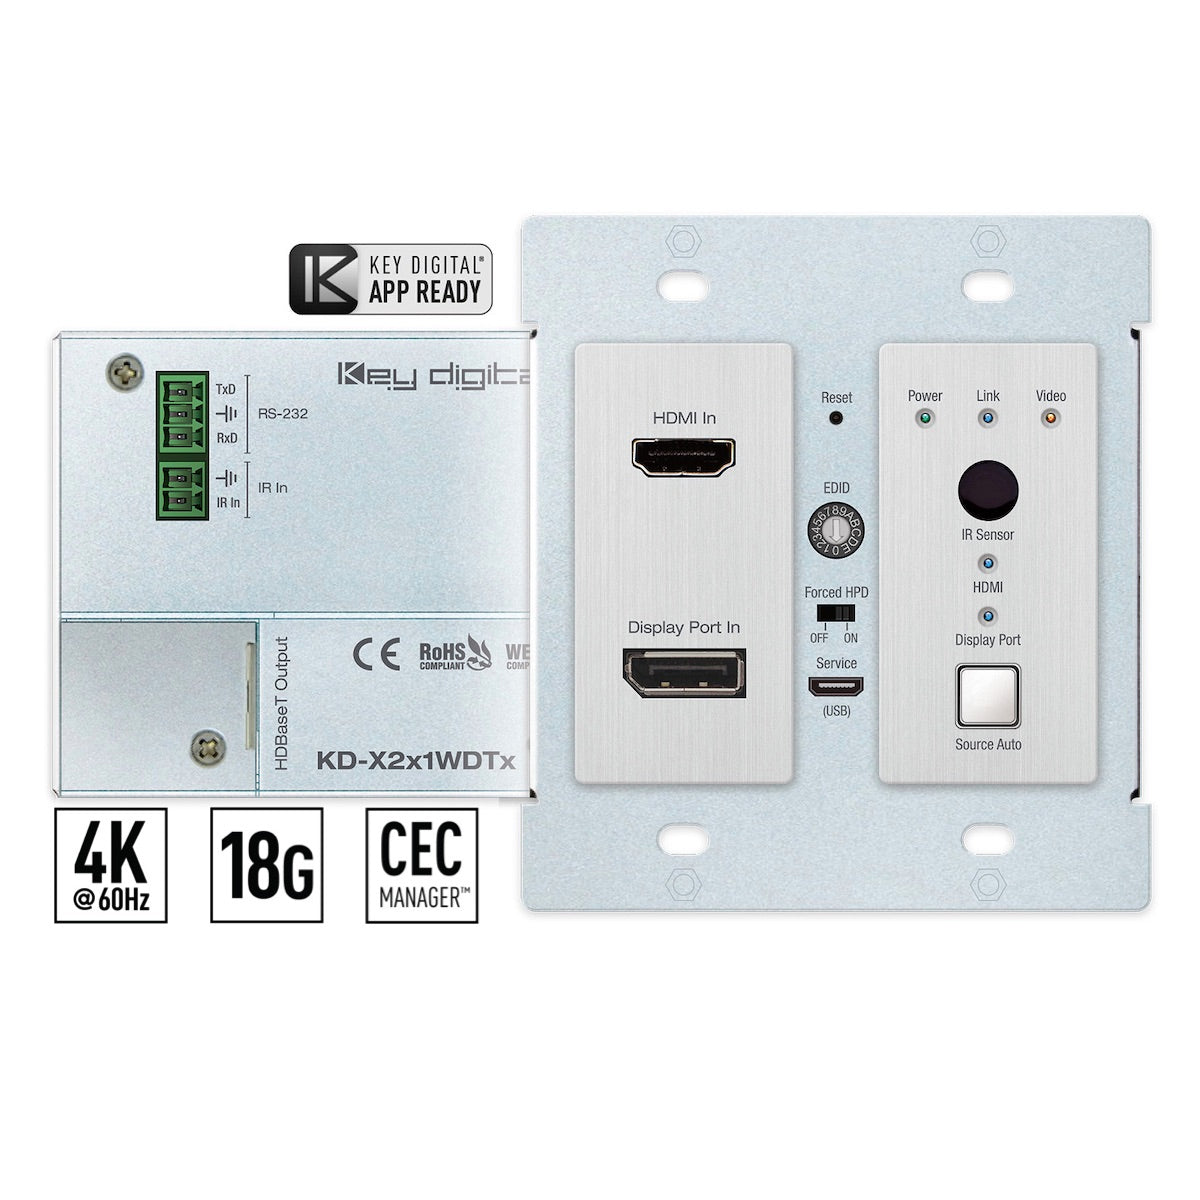 Key Digital KD-X2x1WDTx - 4K/18G HDBaseT Wall Plate Switcher, HDMI & DisplayPort, front and rear views